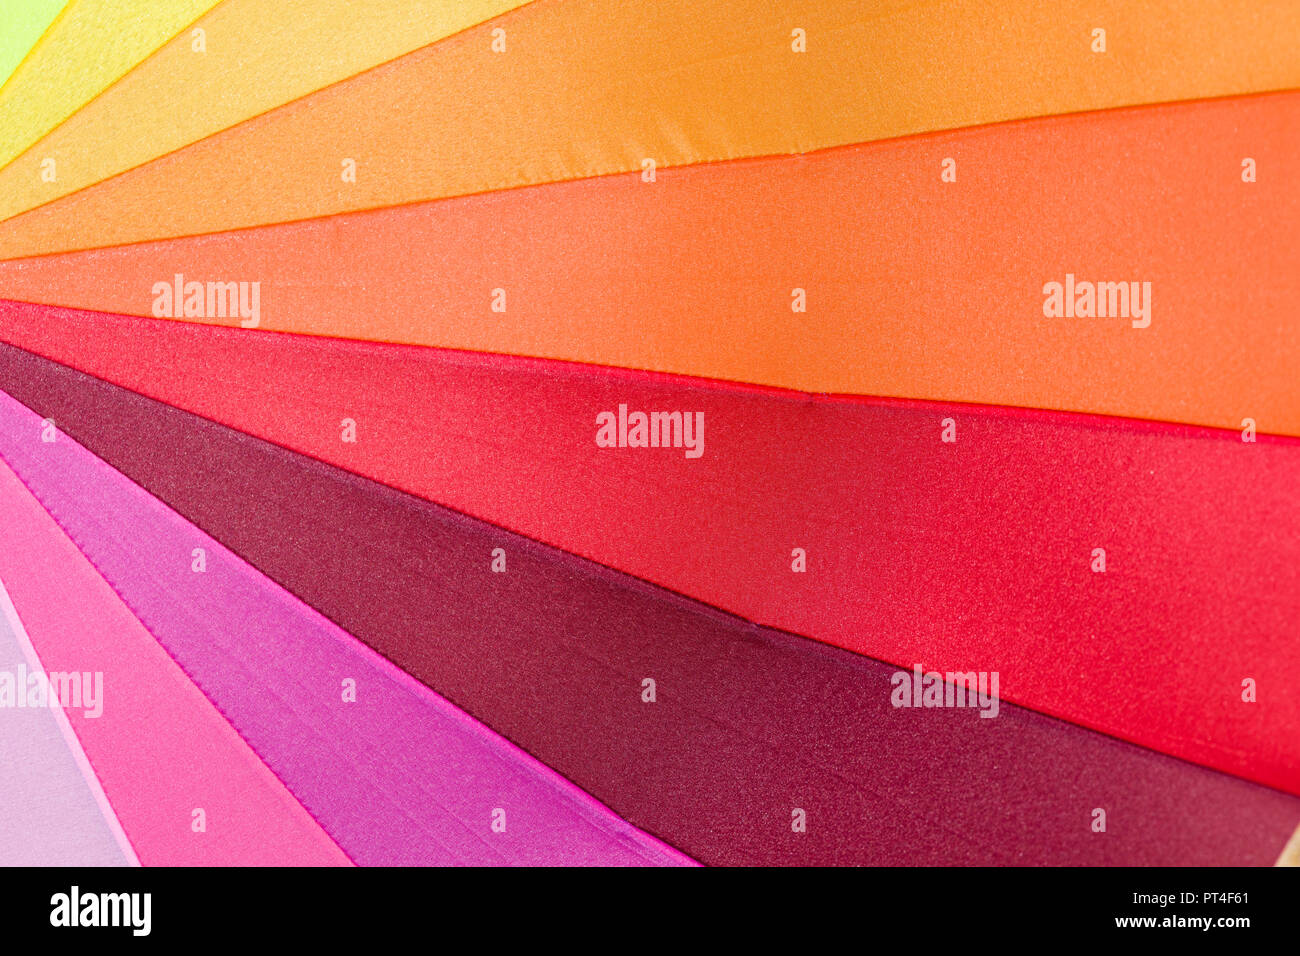 Geométrica abstracta de triángulo en brillantes colores múltiples arco iris Foto de stock